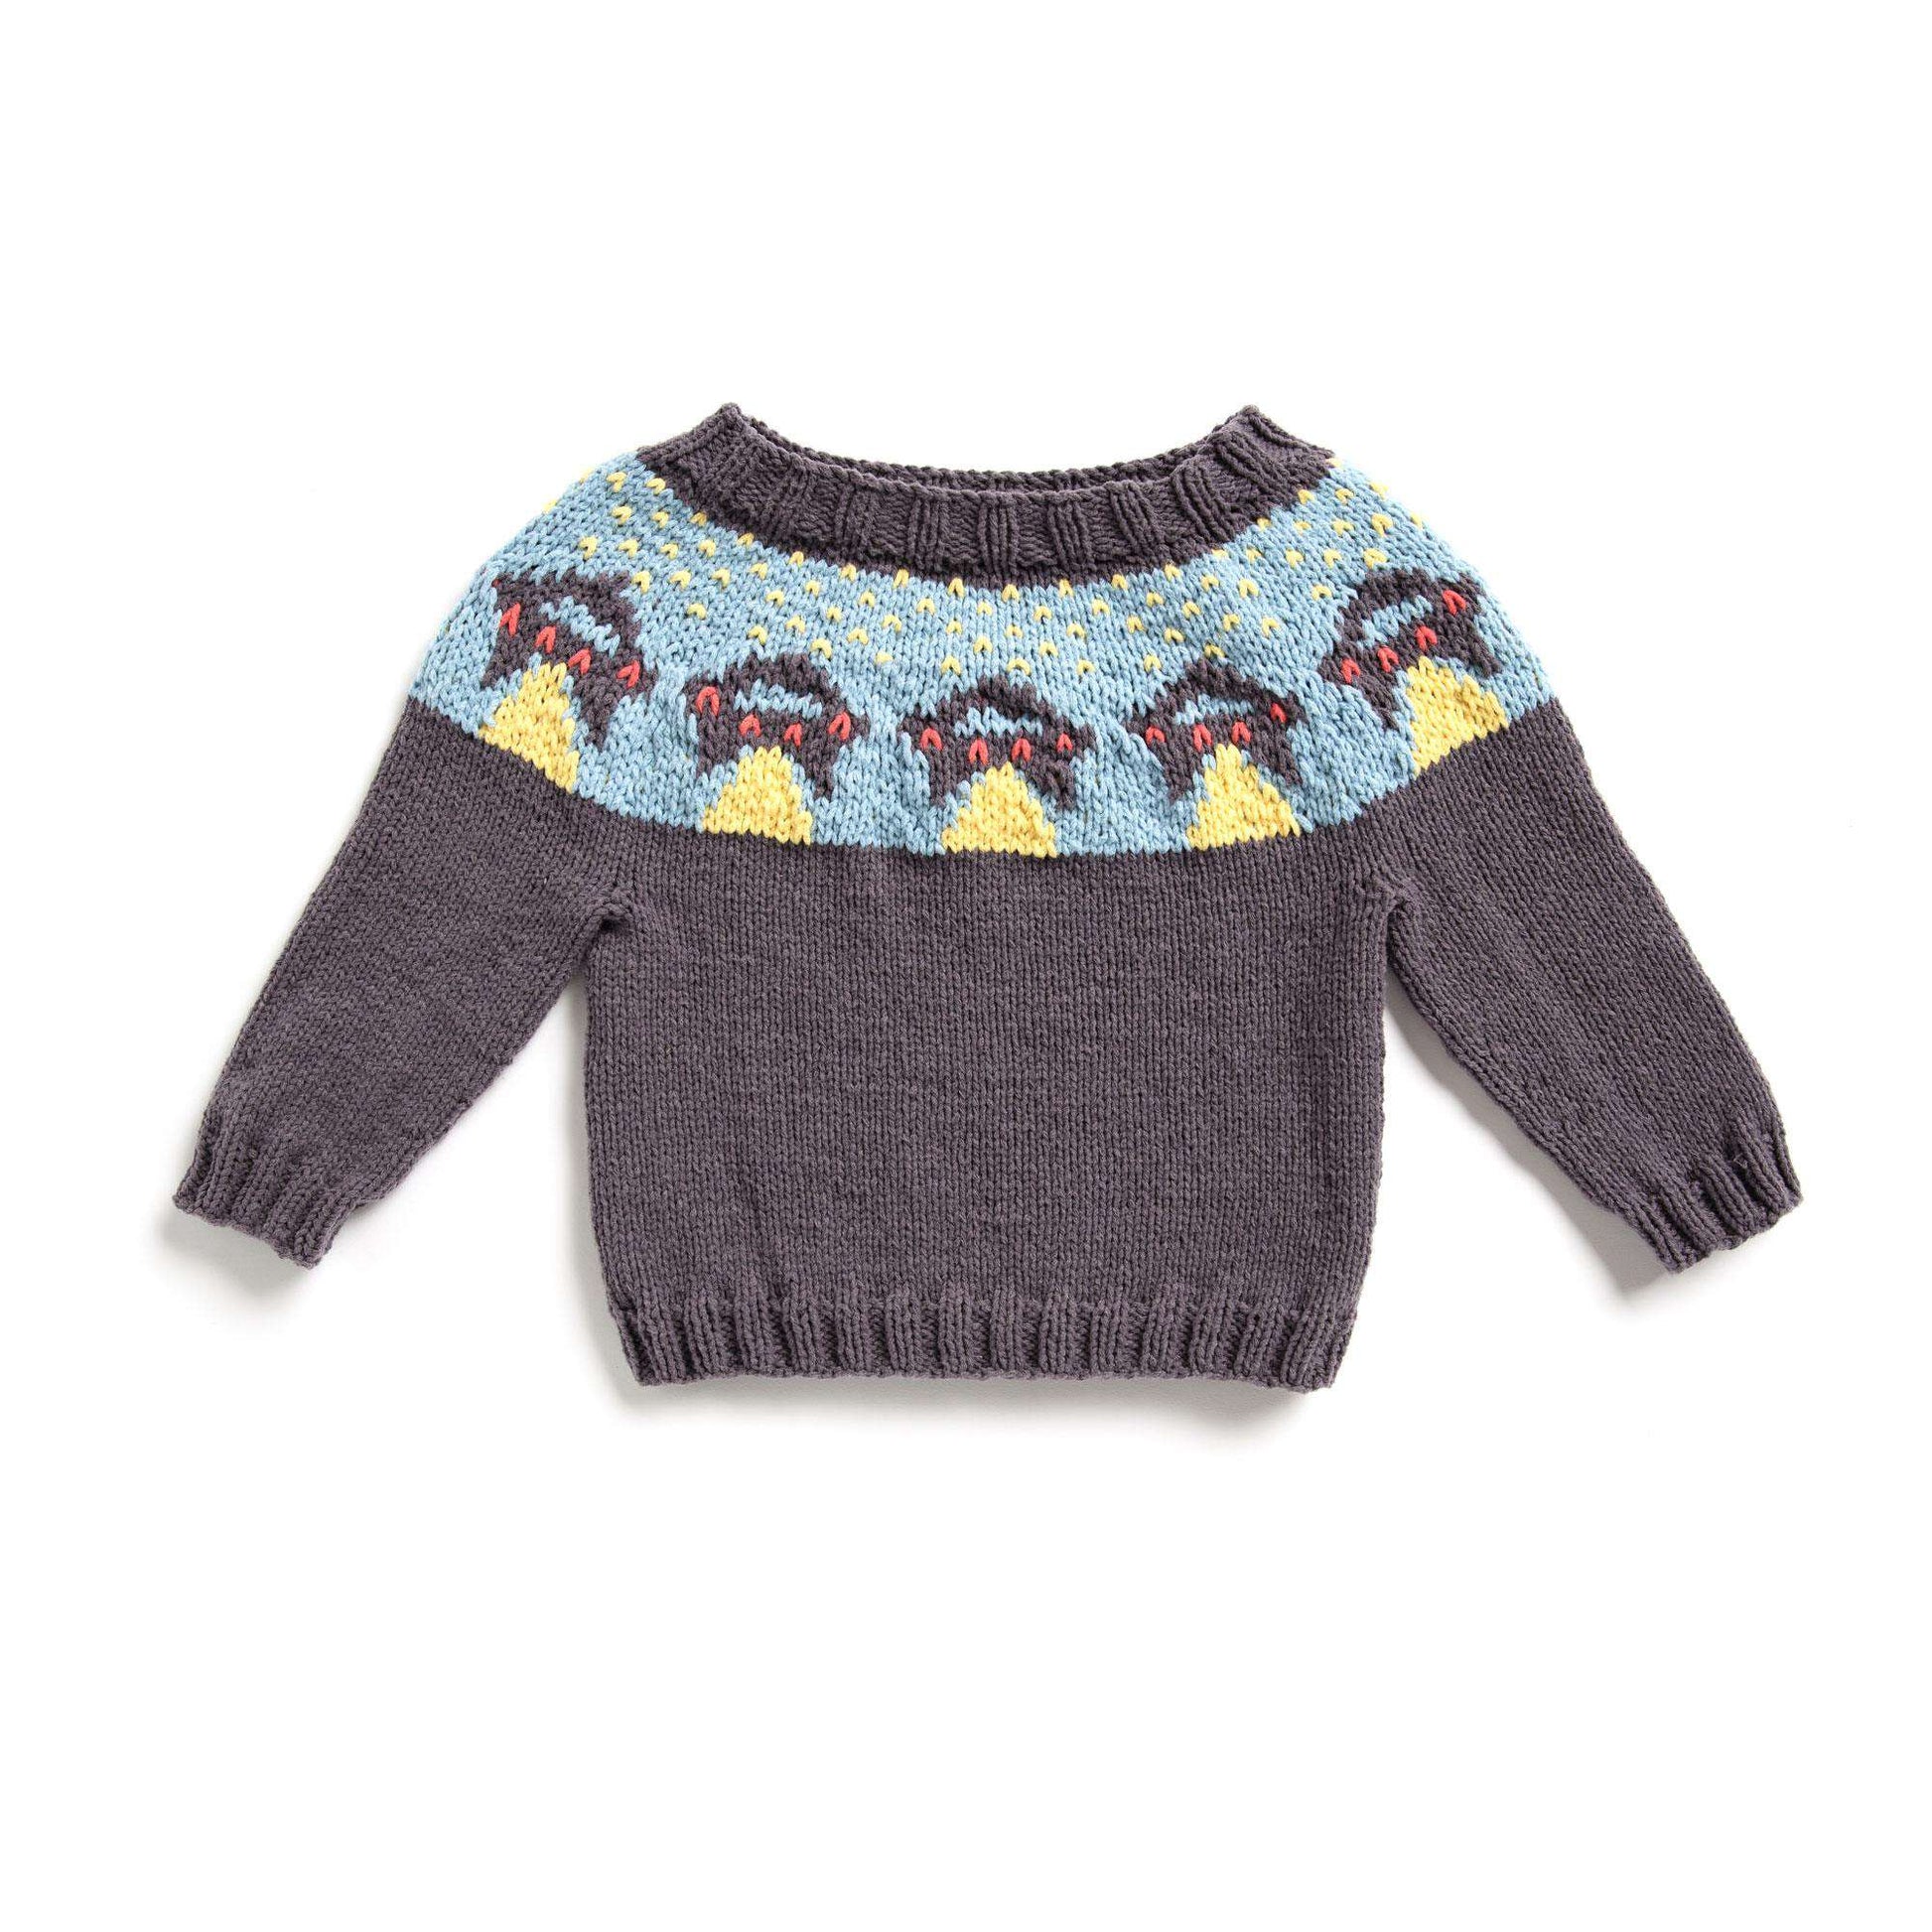 Free Bernat Ufo Yoke Knit Sweater Pattern